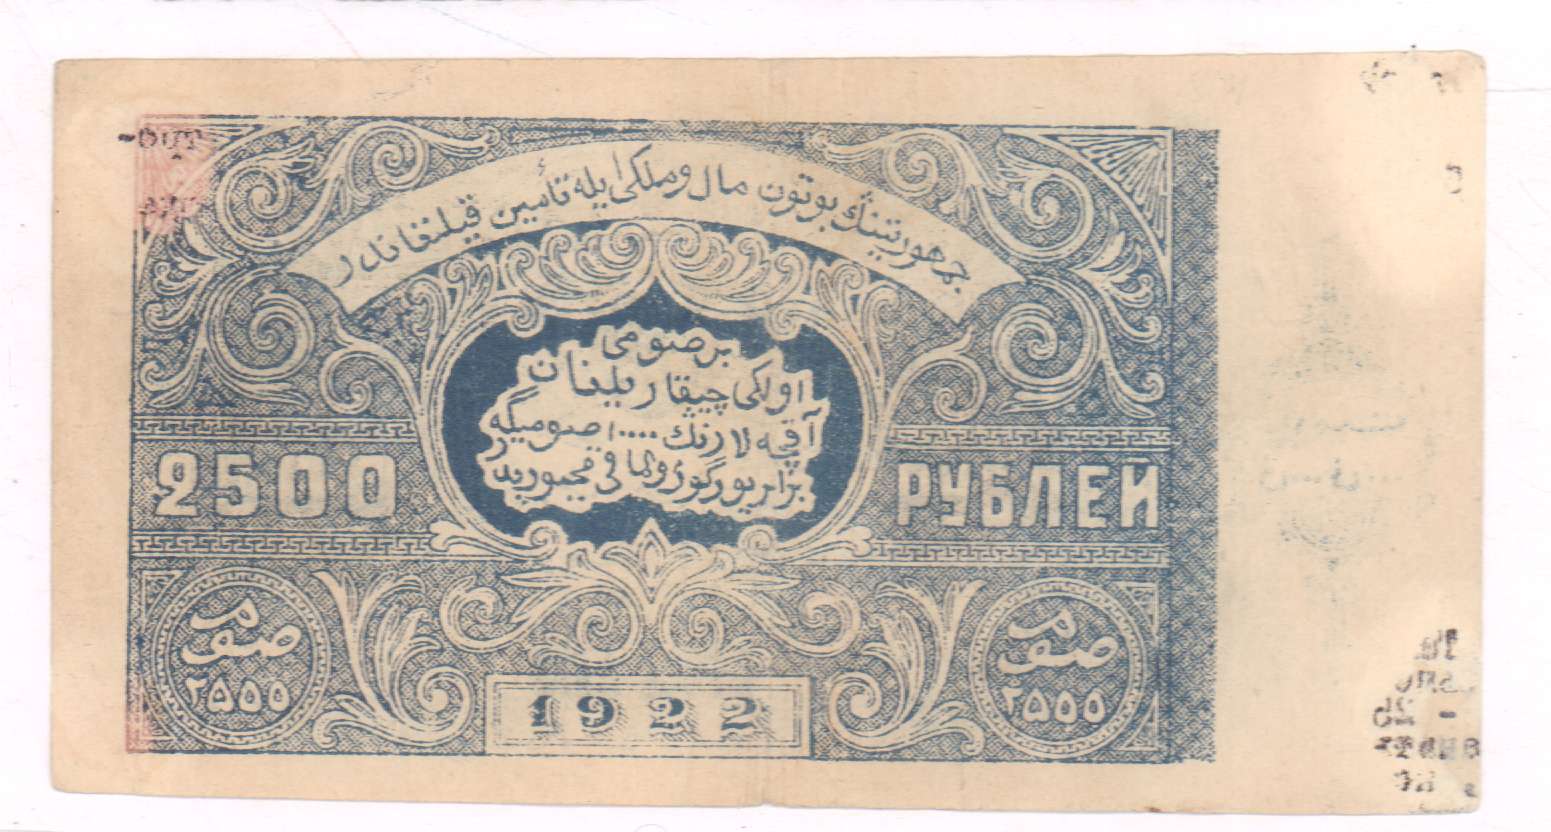 2500 рублей в суммах. 2500 Рублей. Бухара 5 рублей 1922. 2500 Рублей банкнота. 500 Рублей 1922 года.